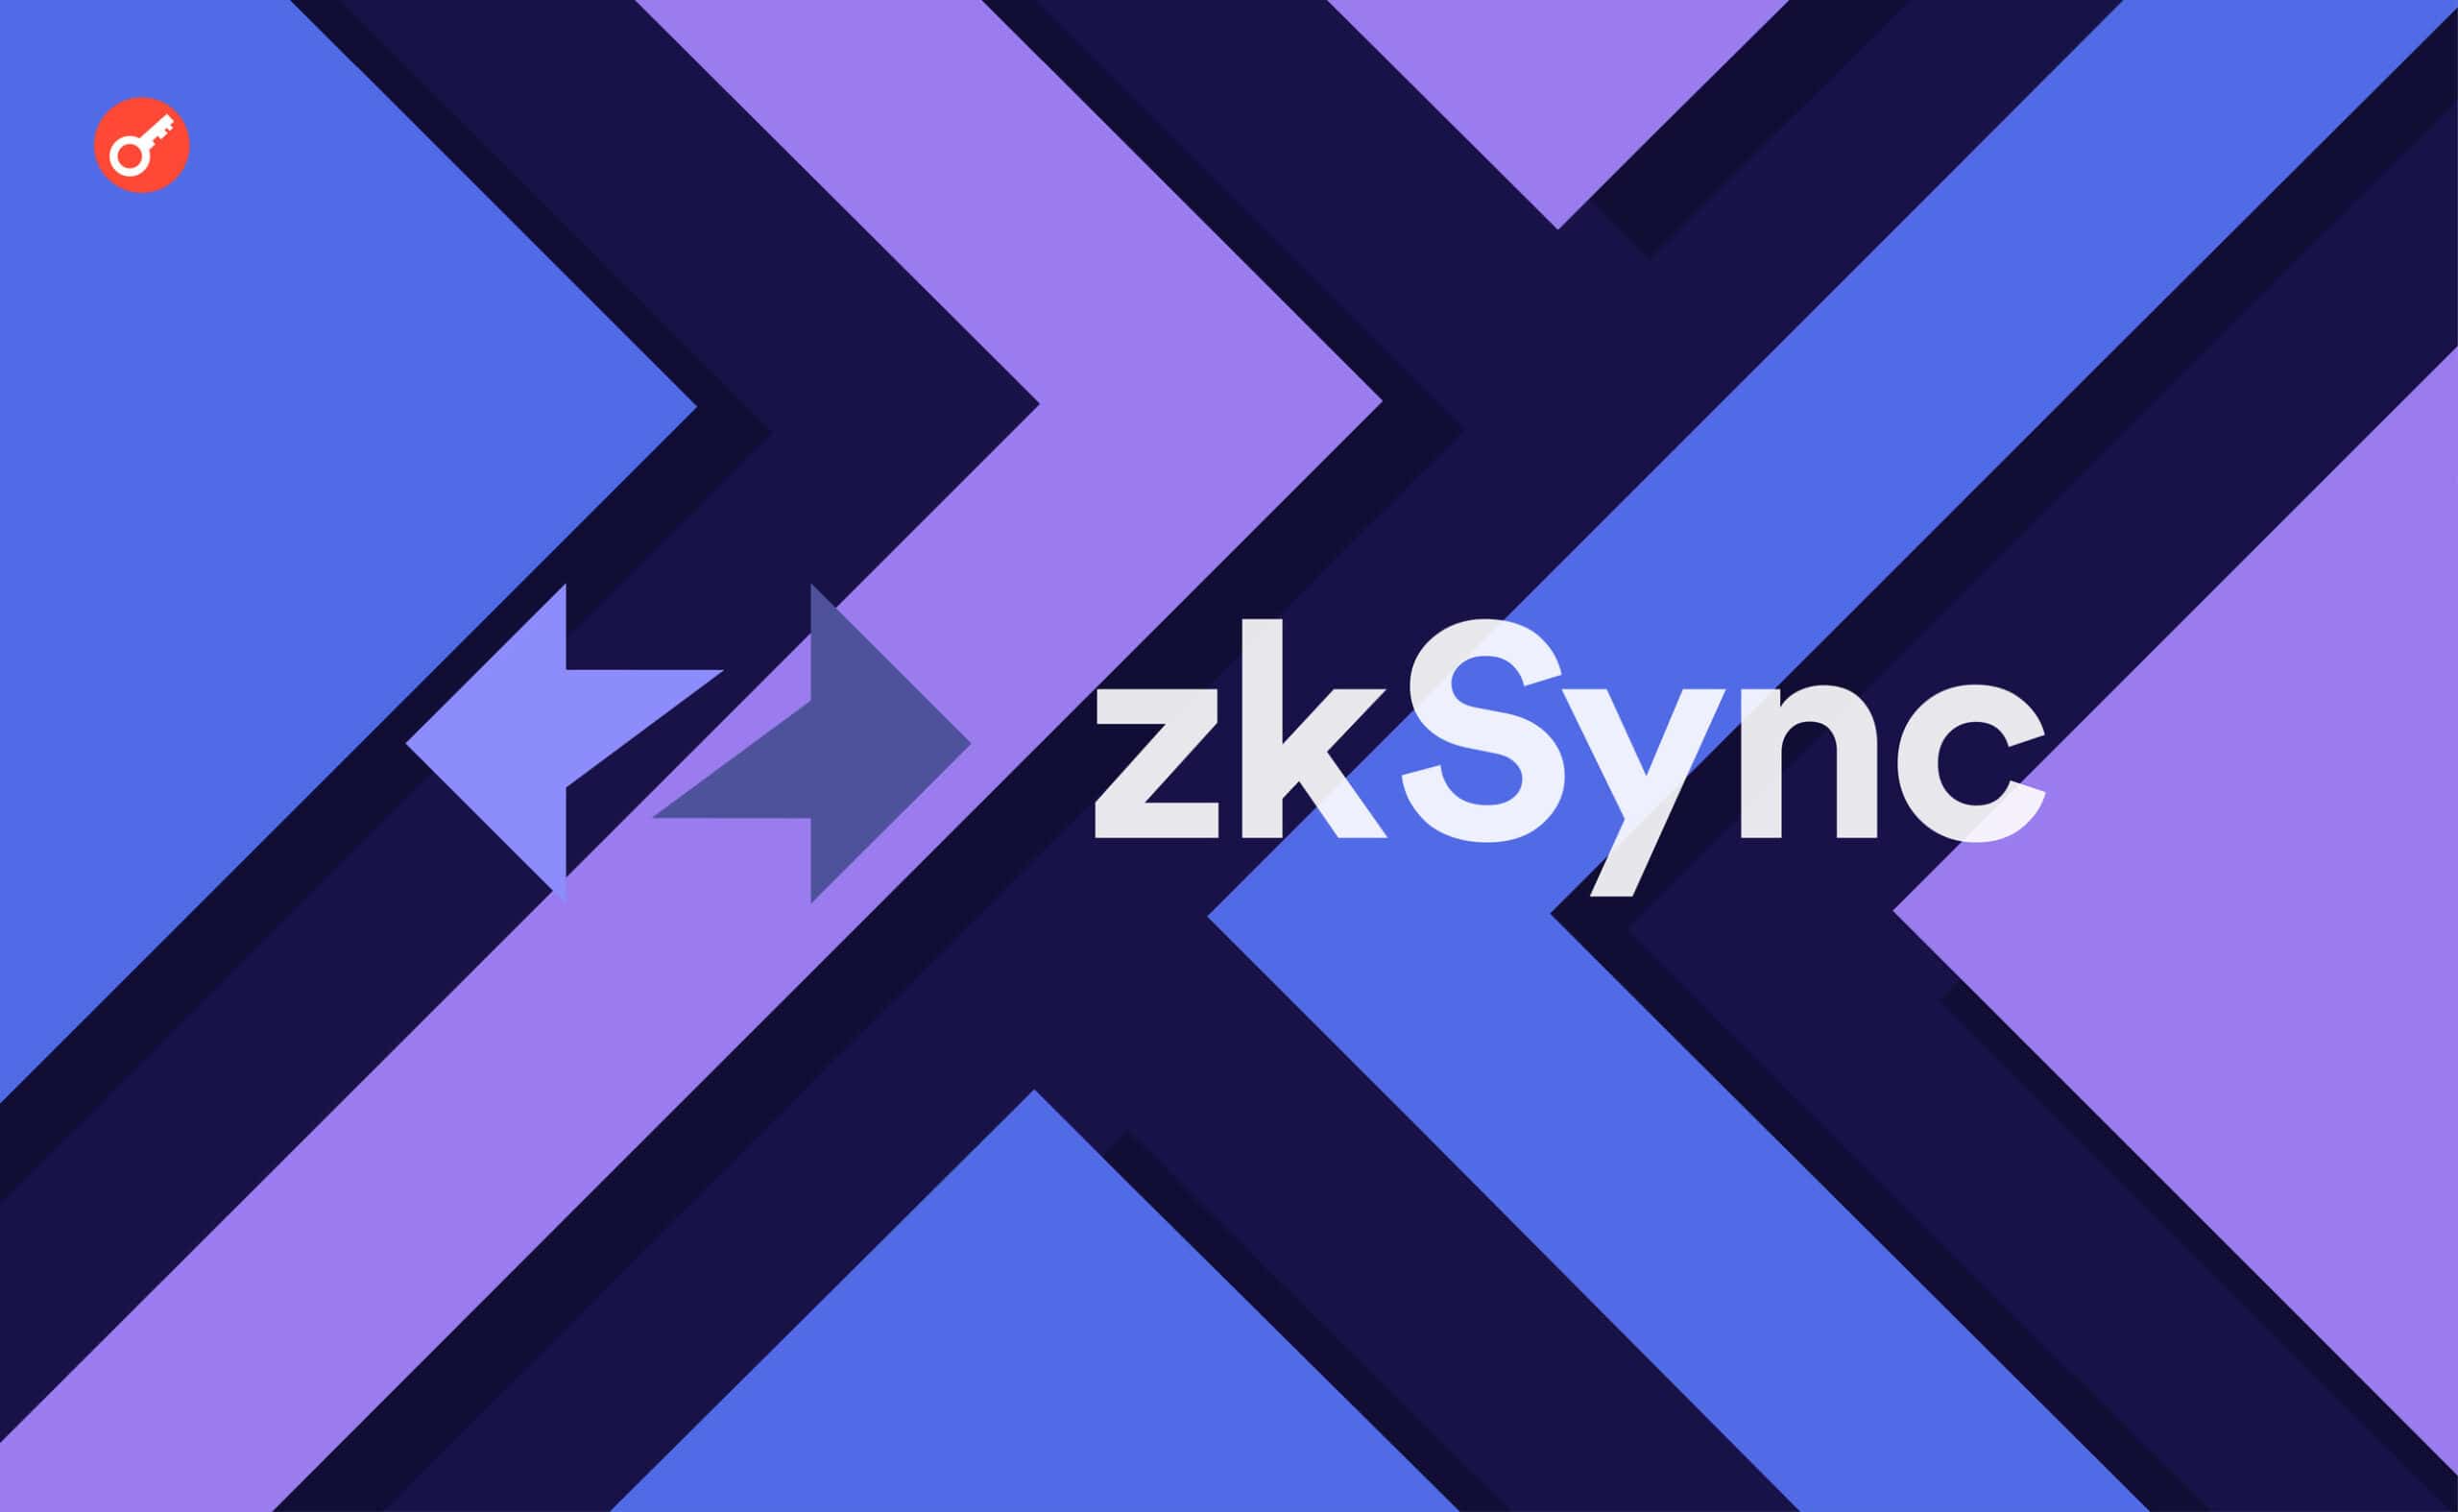 zkSync 2.0 запускає основну мережу і перейменовується в zkSync Era. Головний колаж новини.